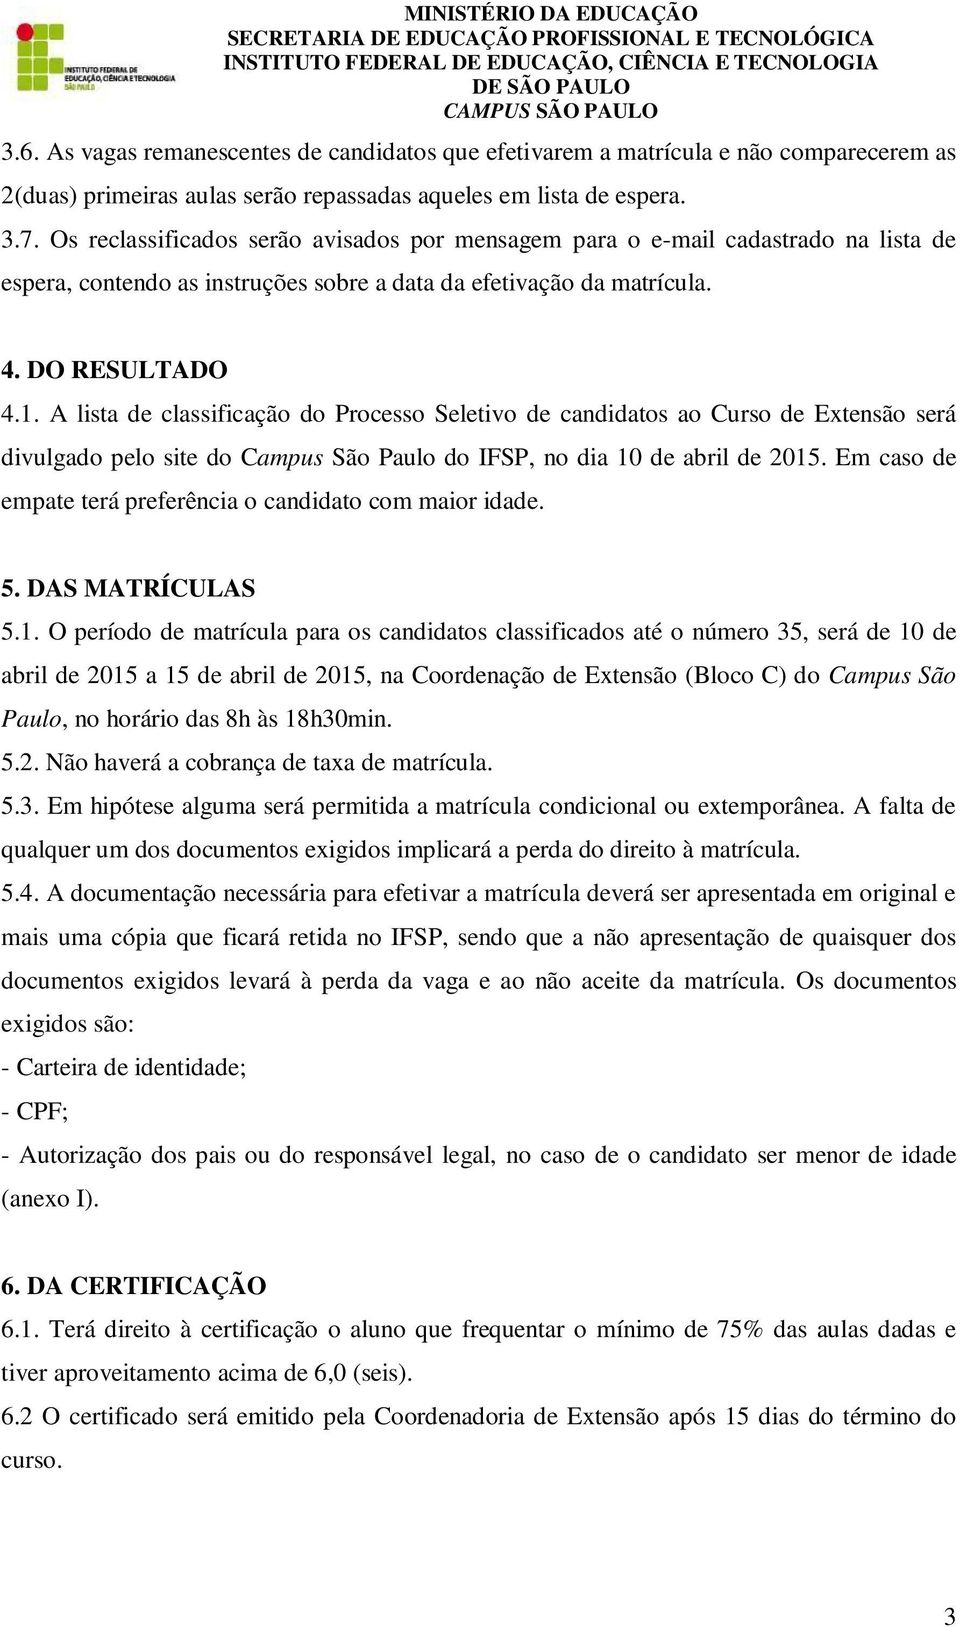 A lista de classificação do Processo Seletivo de candidatos ao Curso de Extensão será divulgado pelo site do Campus São Paulo do IFSP, no dia 10 de abril de 2015.